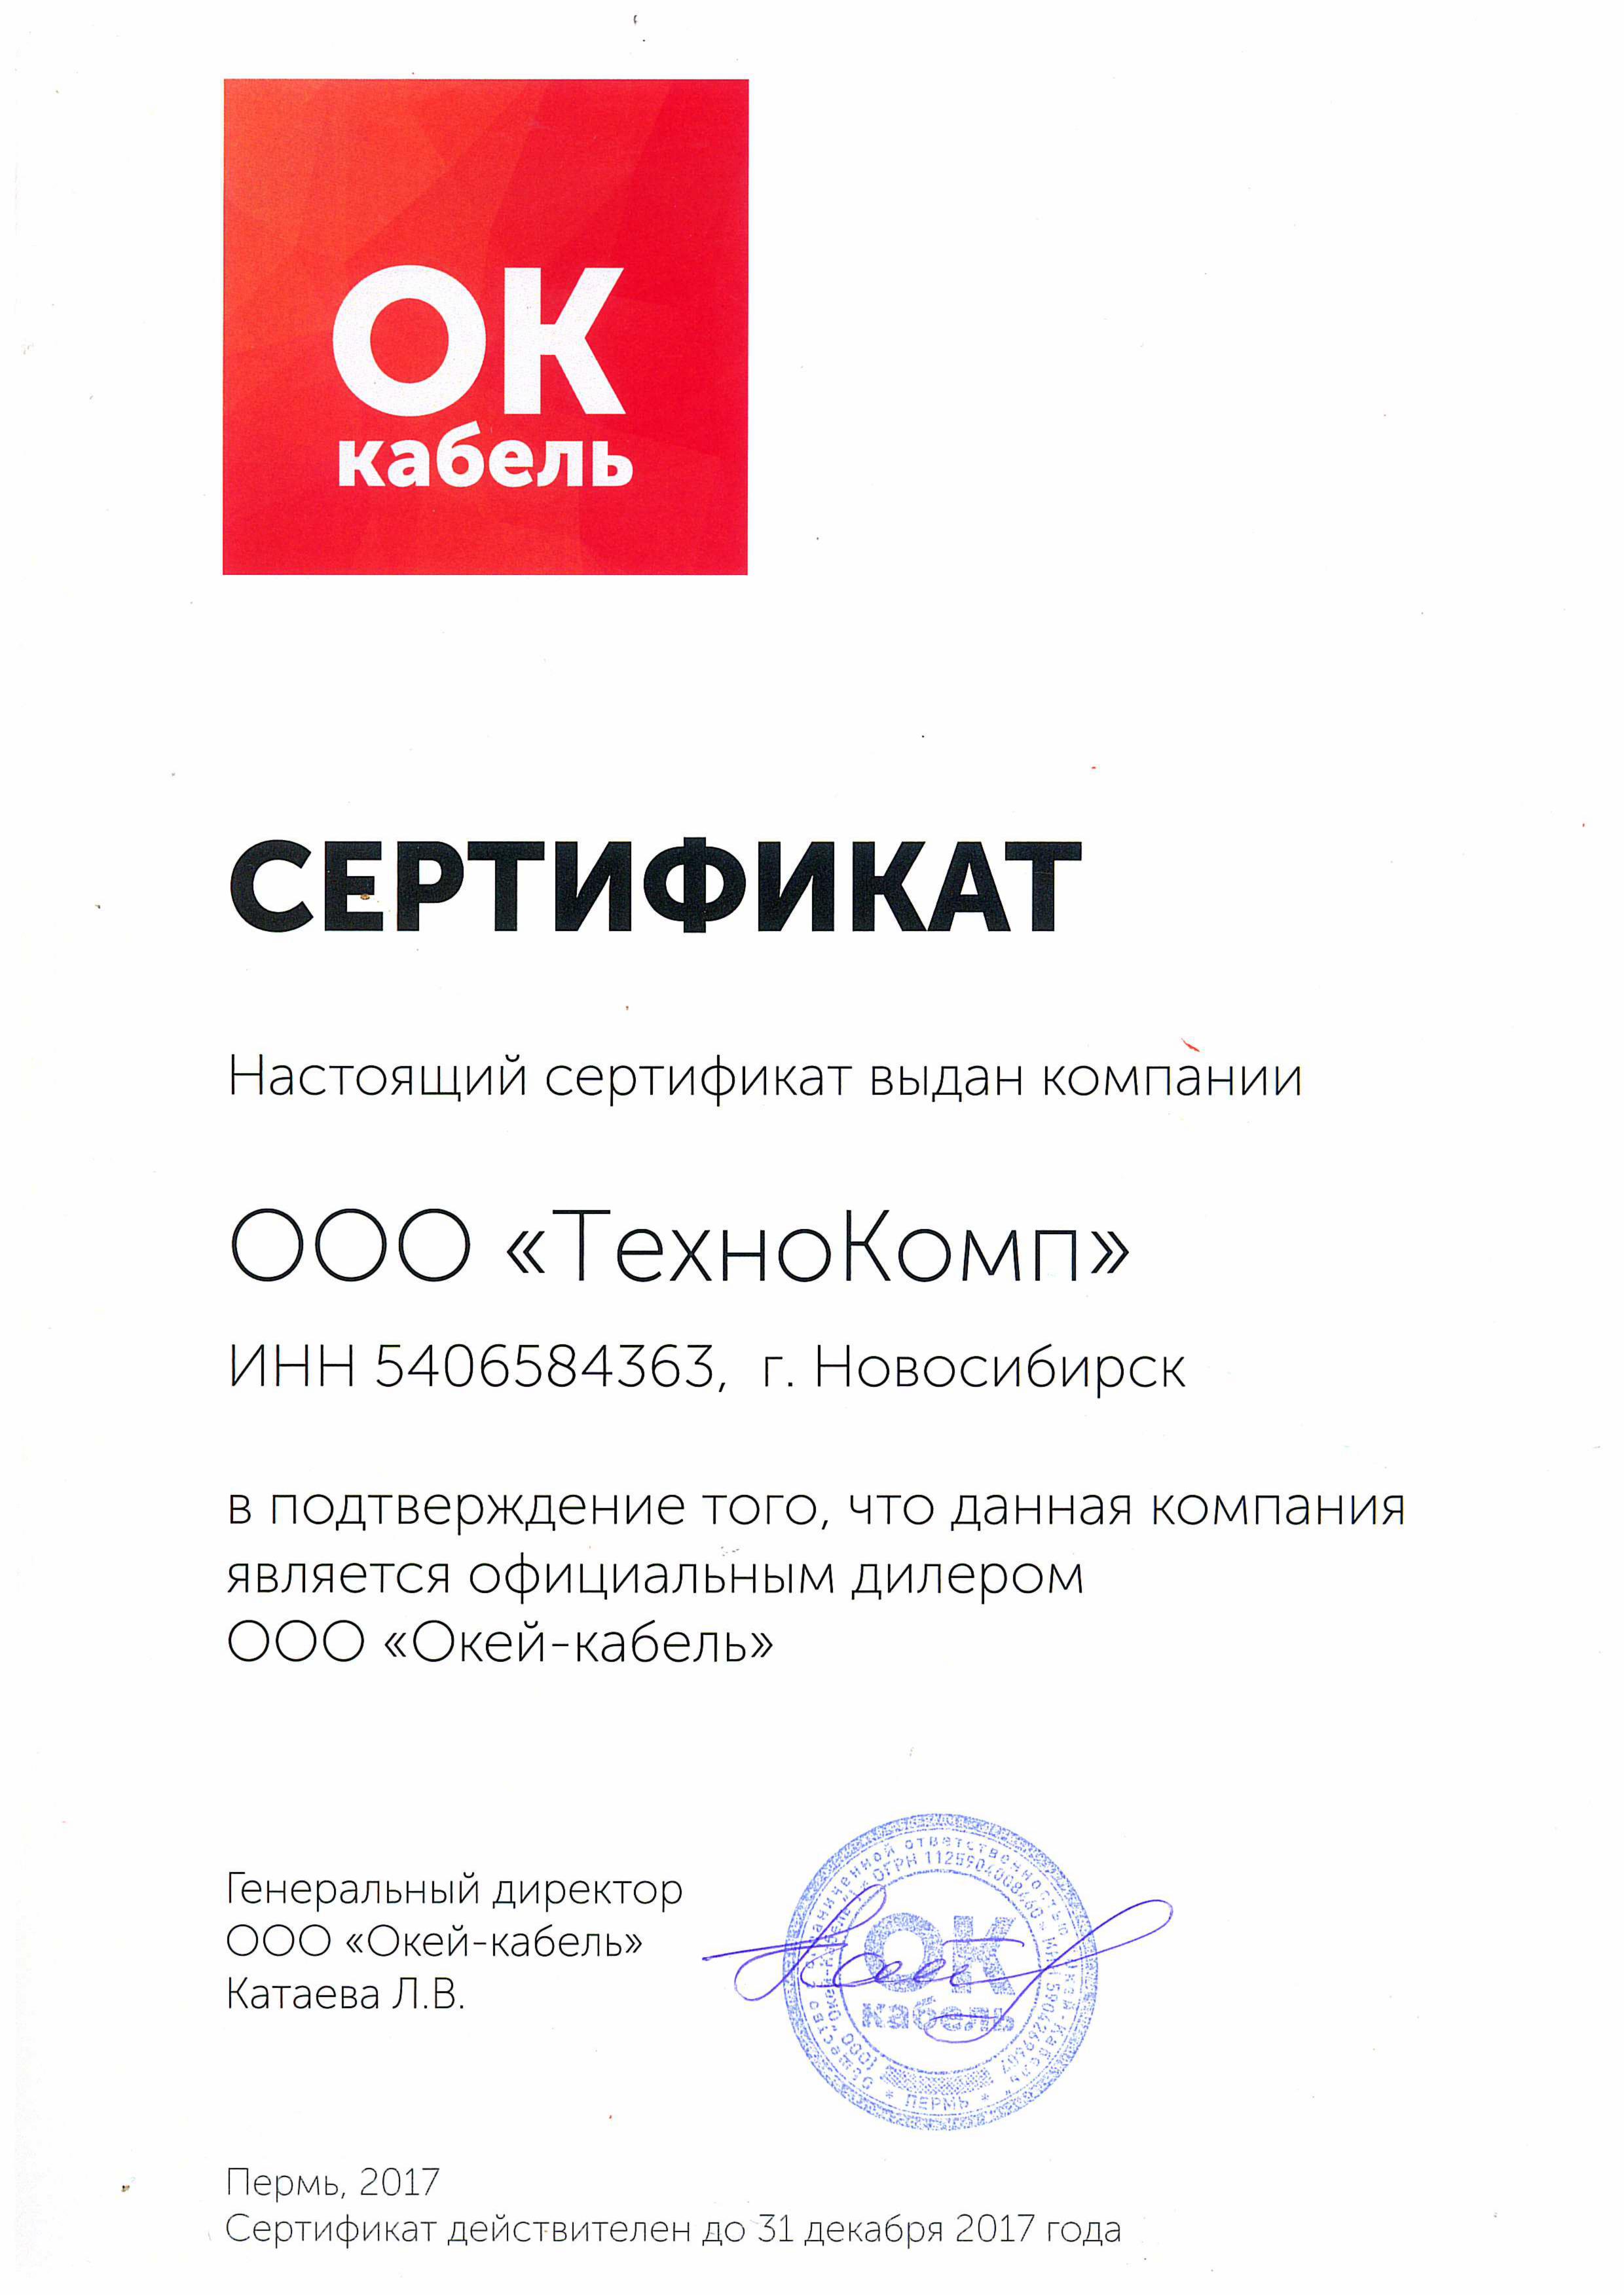 Сертификат дилера ОАО Окей-кабель»